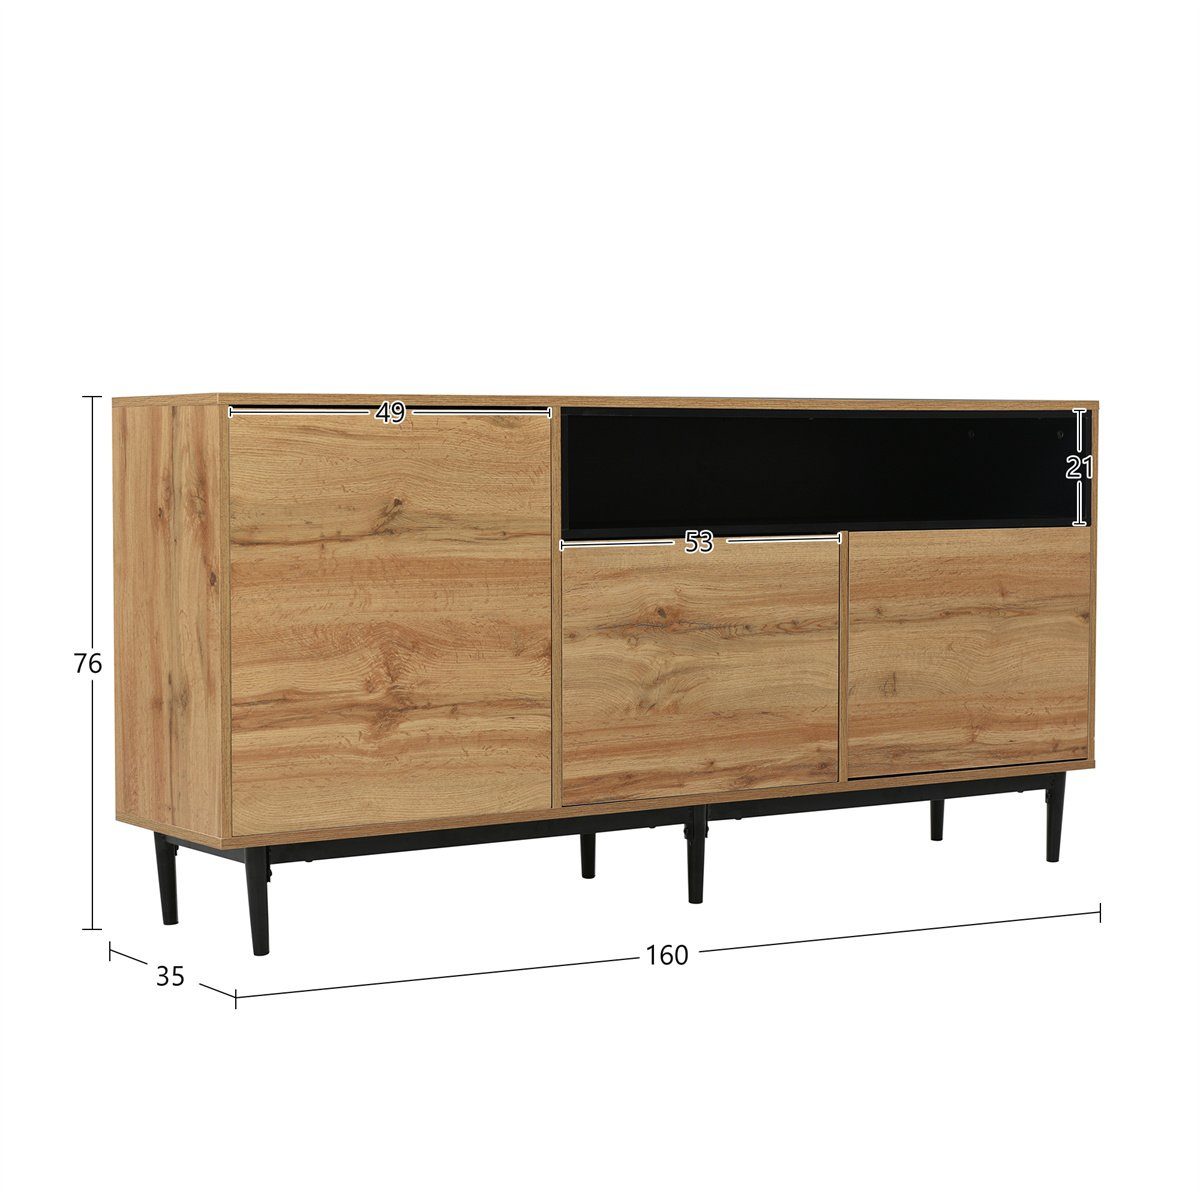 Montage,platzsparend Holz,einfach XDeer x drei 76 Regalen aus Türen 35 cm)mit TV-Schrank Design,robust,zuverlässig und TV-Schrank(160 x Moderner